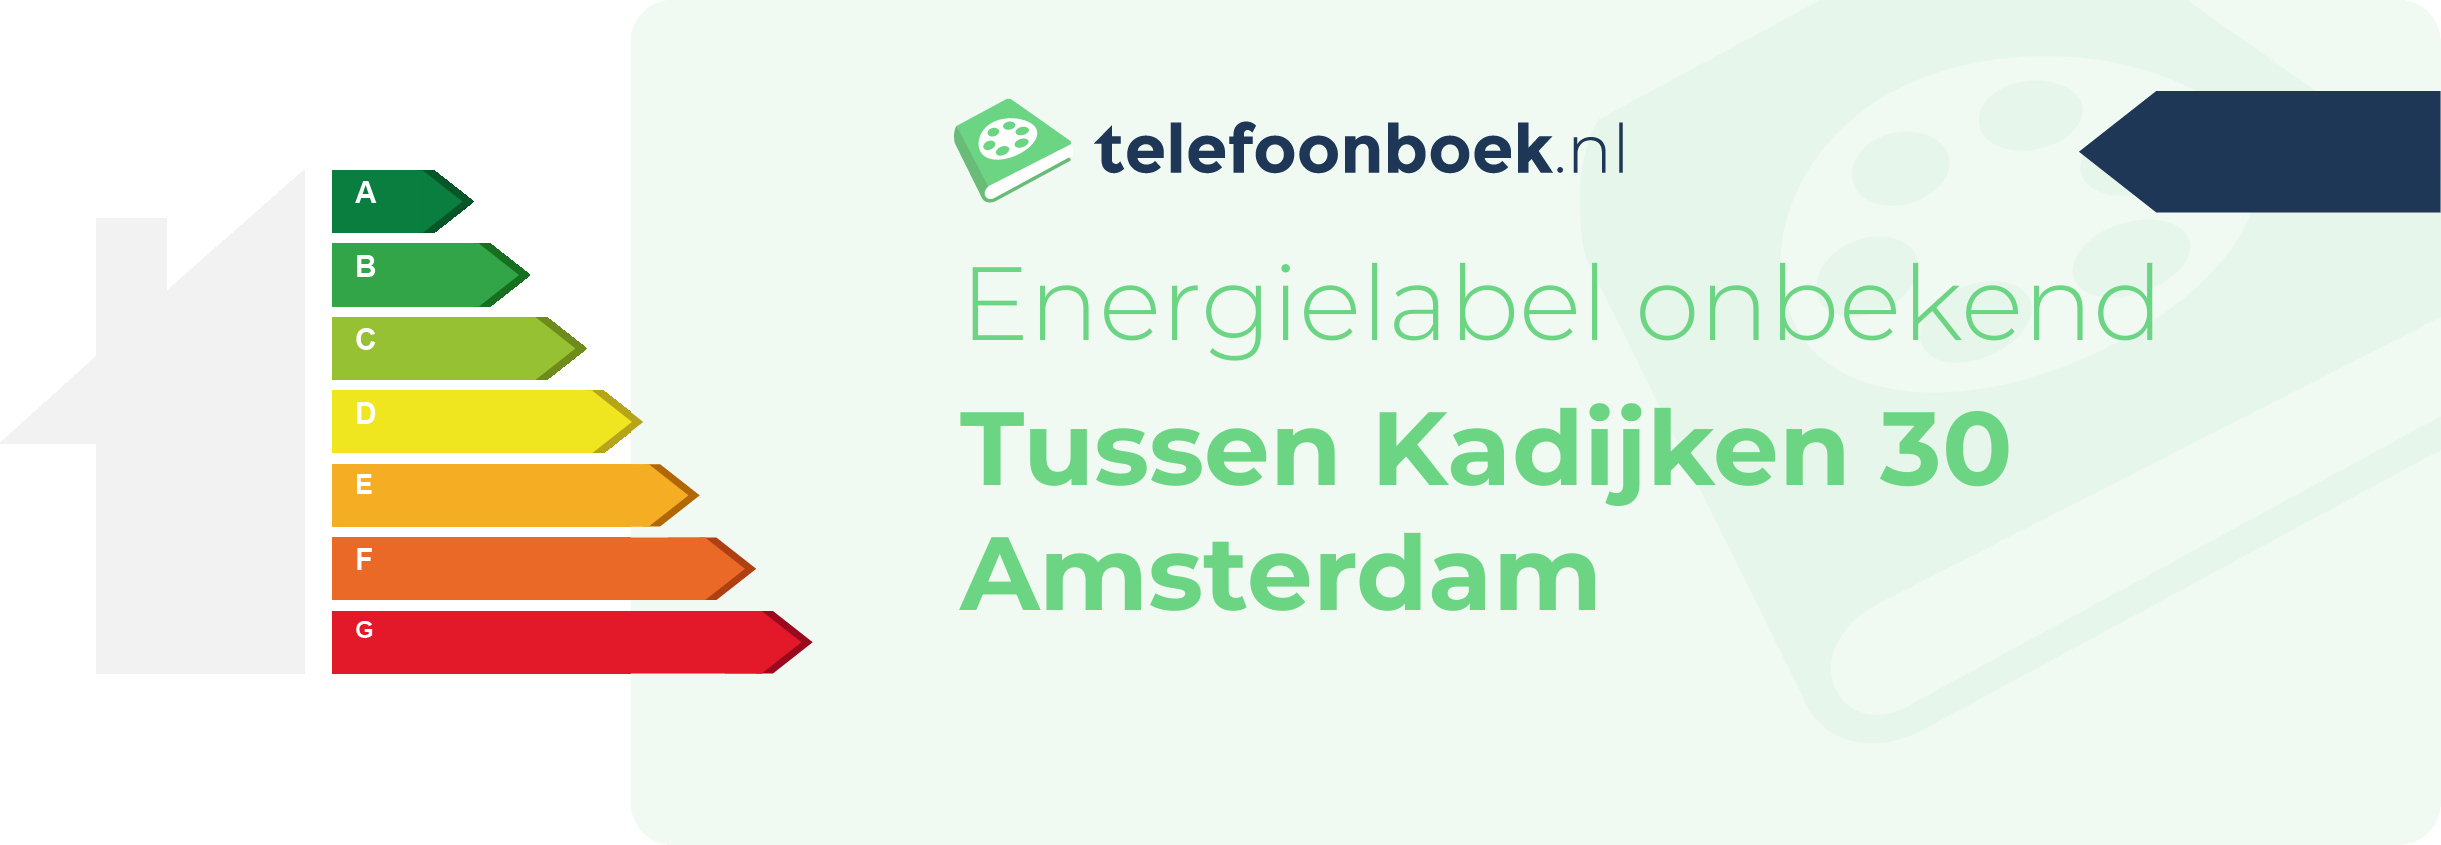 Energielabel Tussen Kadijken 30 Amsterdam